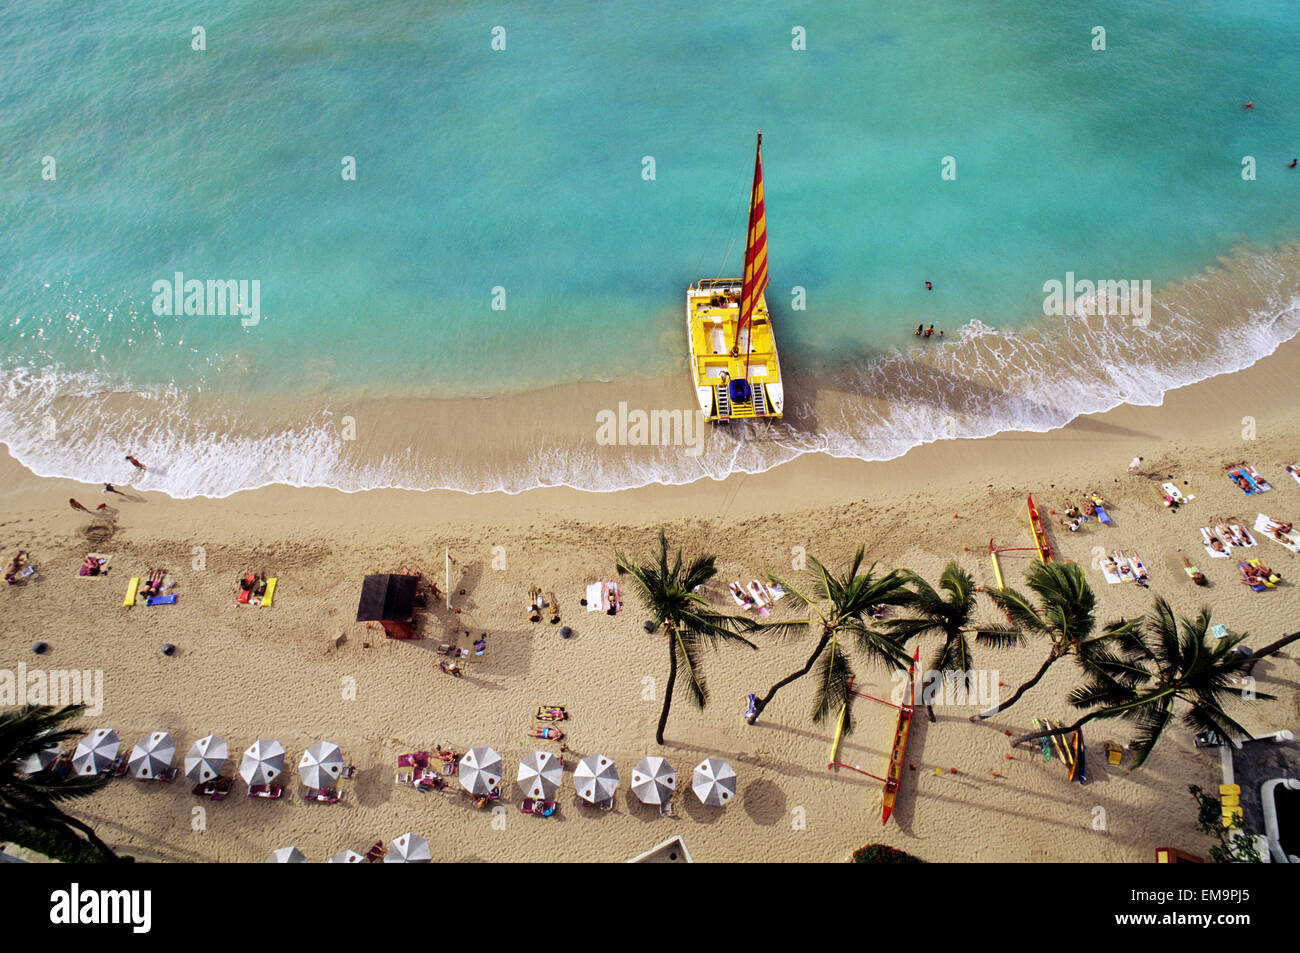 Hawaii, Oahu, Waikiki Beach mit Katamaran, Sonnenschirmen und Urlauber am Strand, Blick von oben Stockfoto